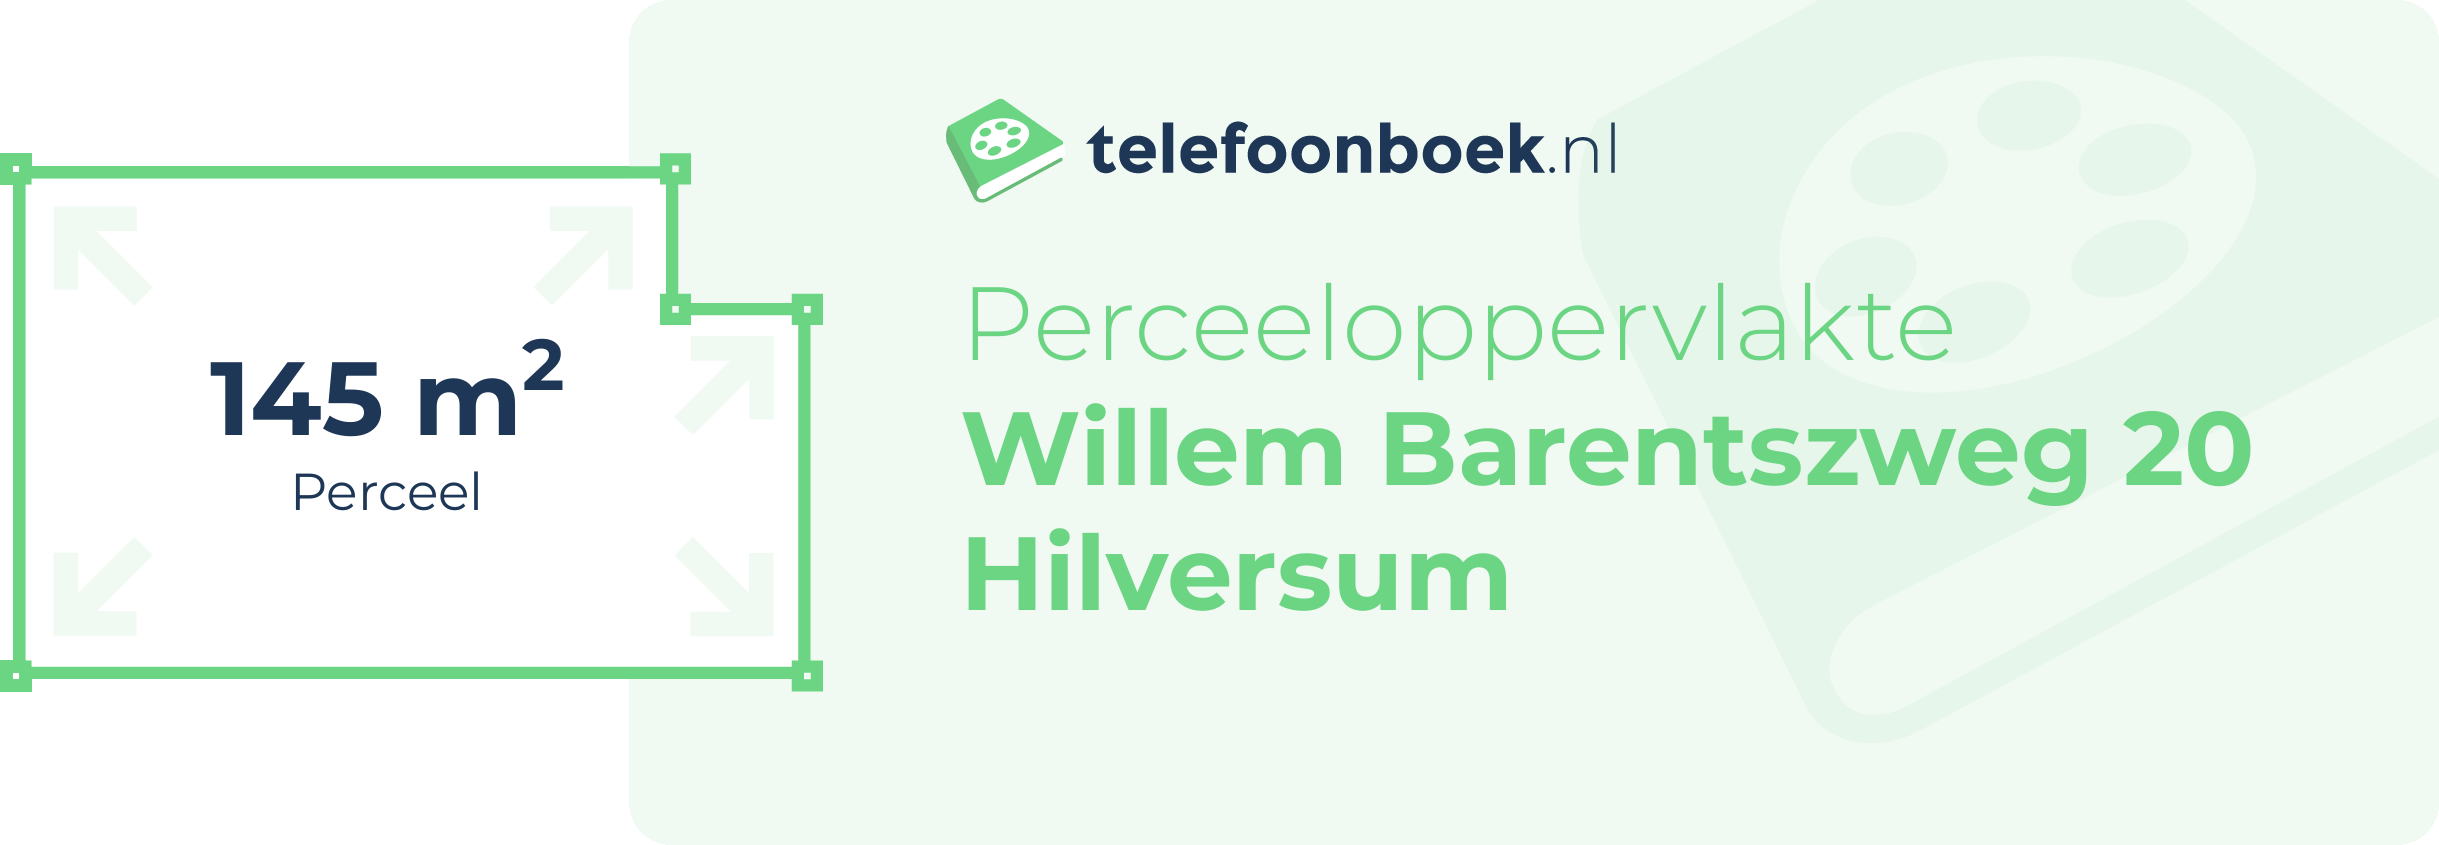 Perceeloppervlakte Willem Barentszweg 20 Hilversum